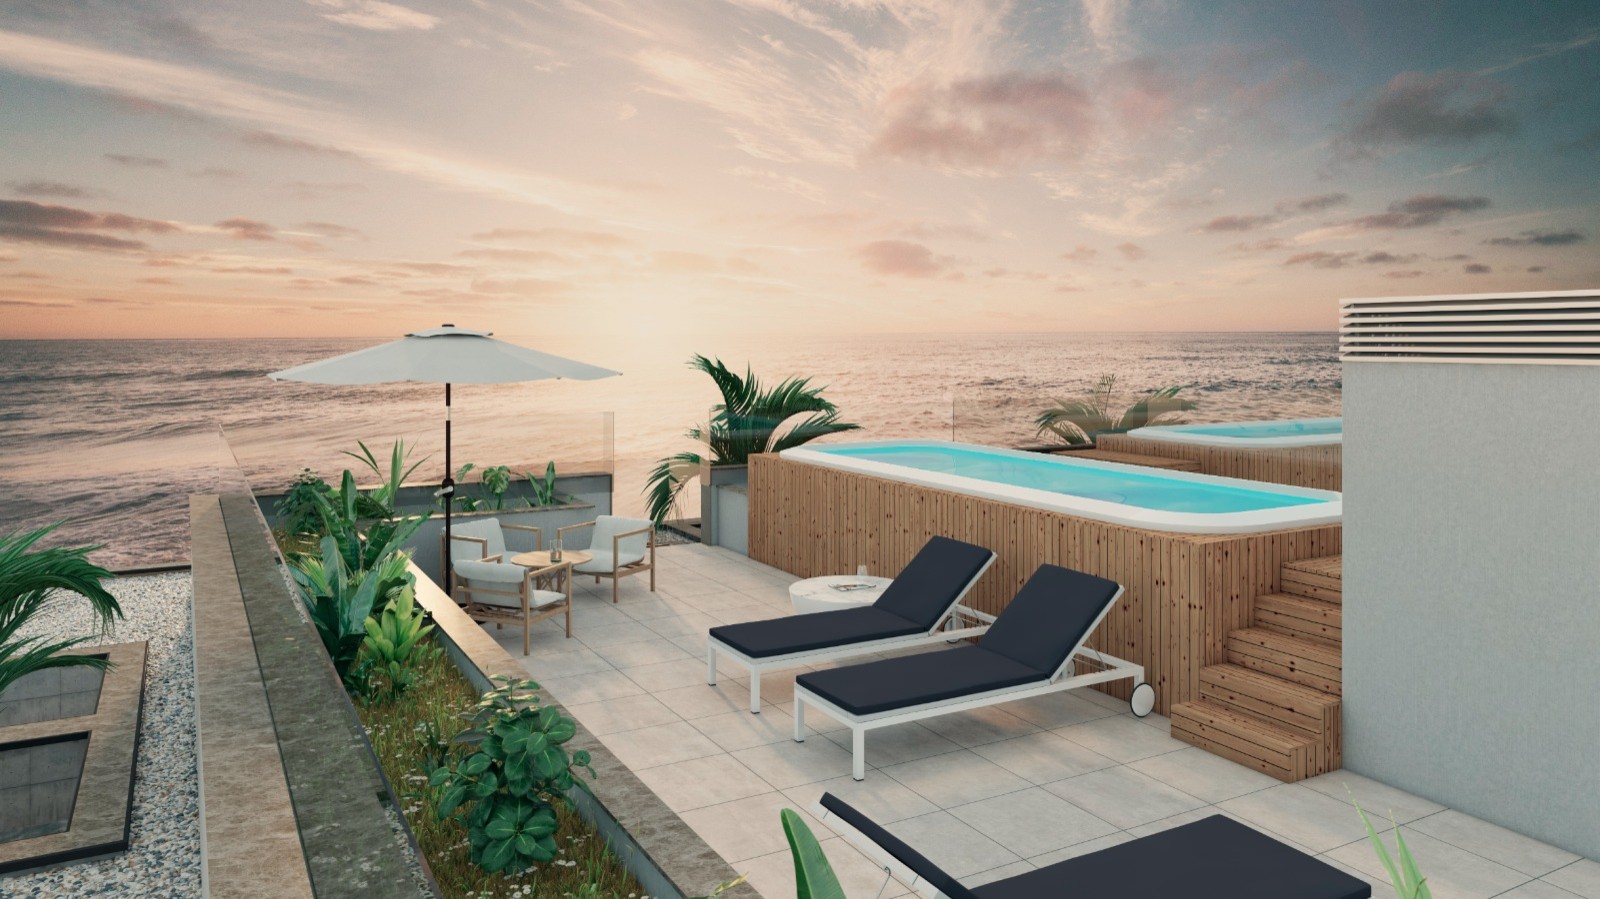 Apartamento T4 com vista de mar, terraço e piscina, para venda, Gaia, Portugal_250331